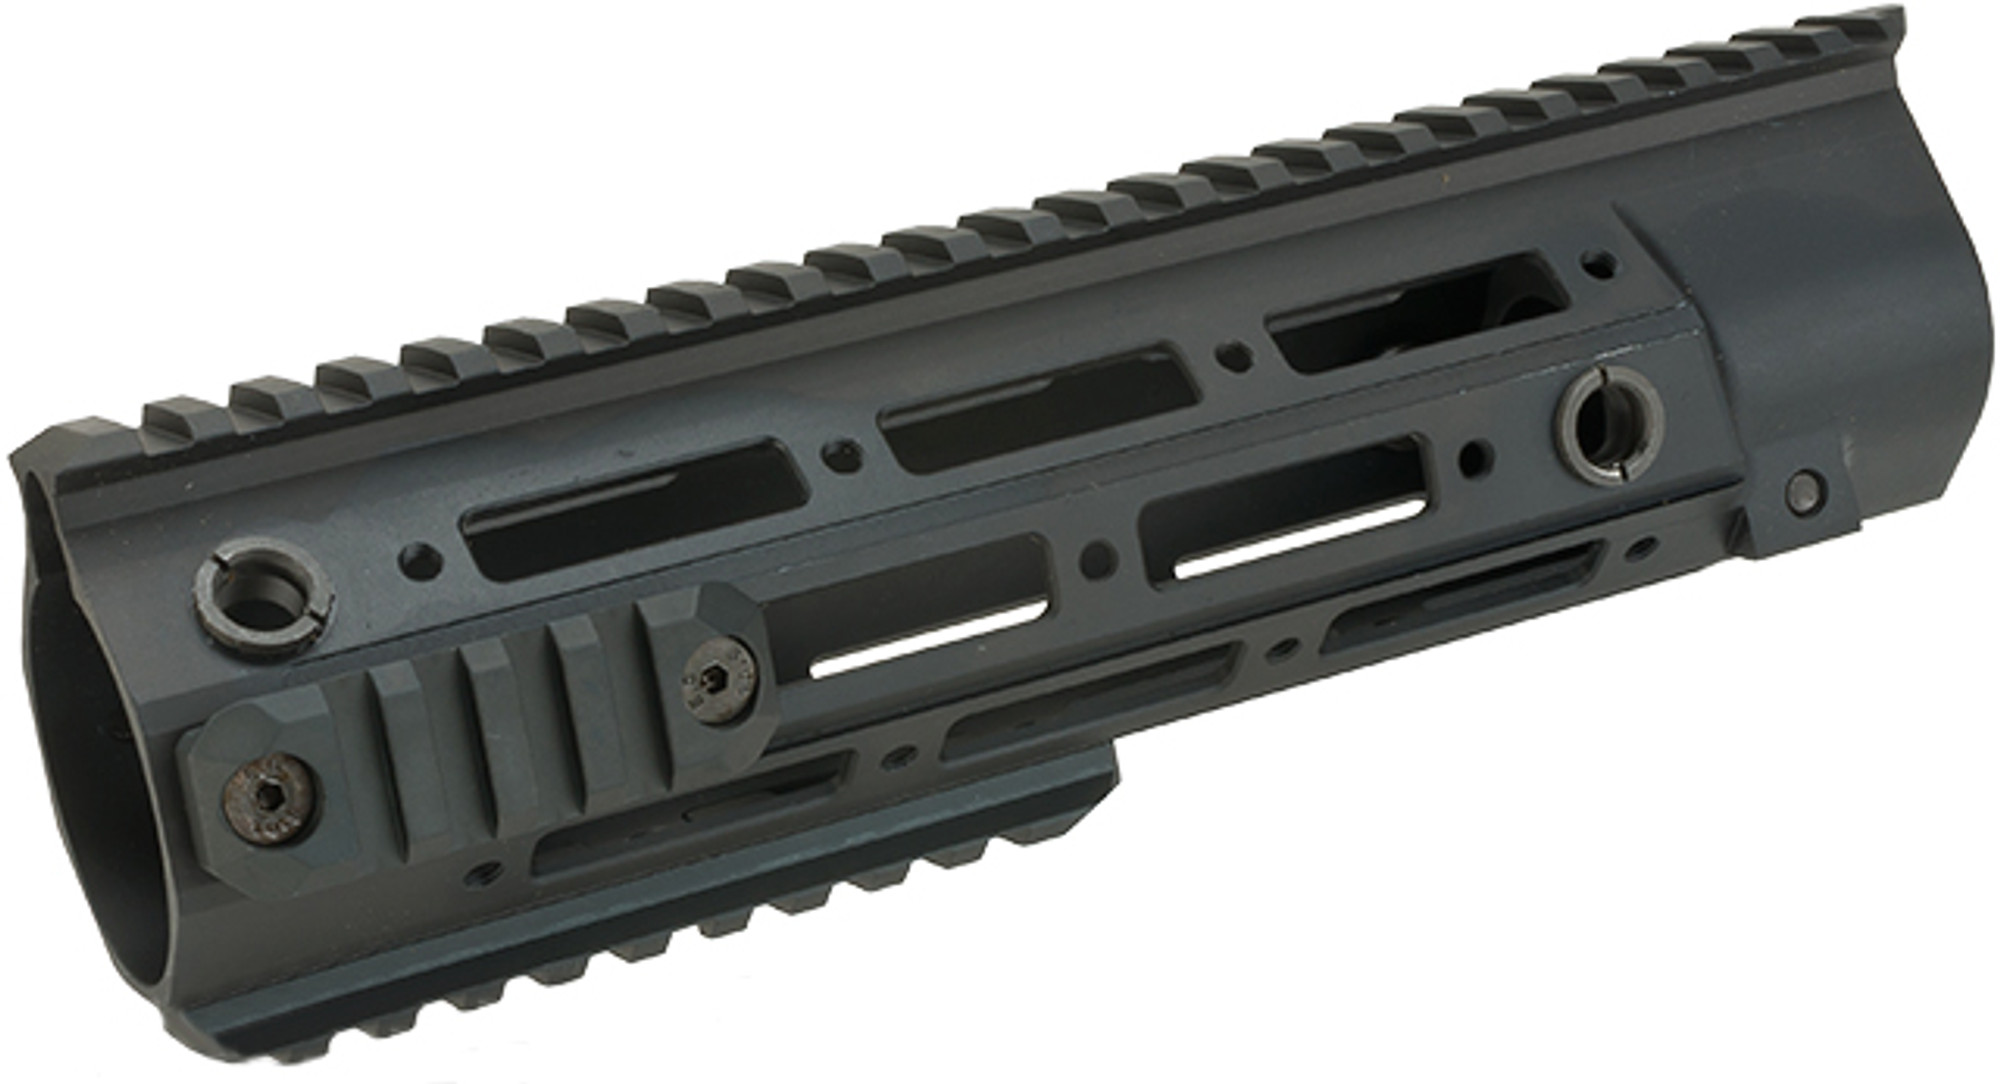 5KU Airsoft RAHG 10.5" Rail for VFC/Umarex HK416 Series Airsoft Rifles - Black